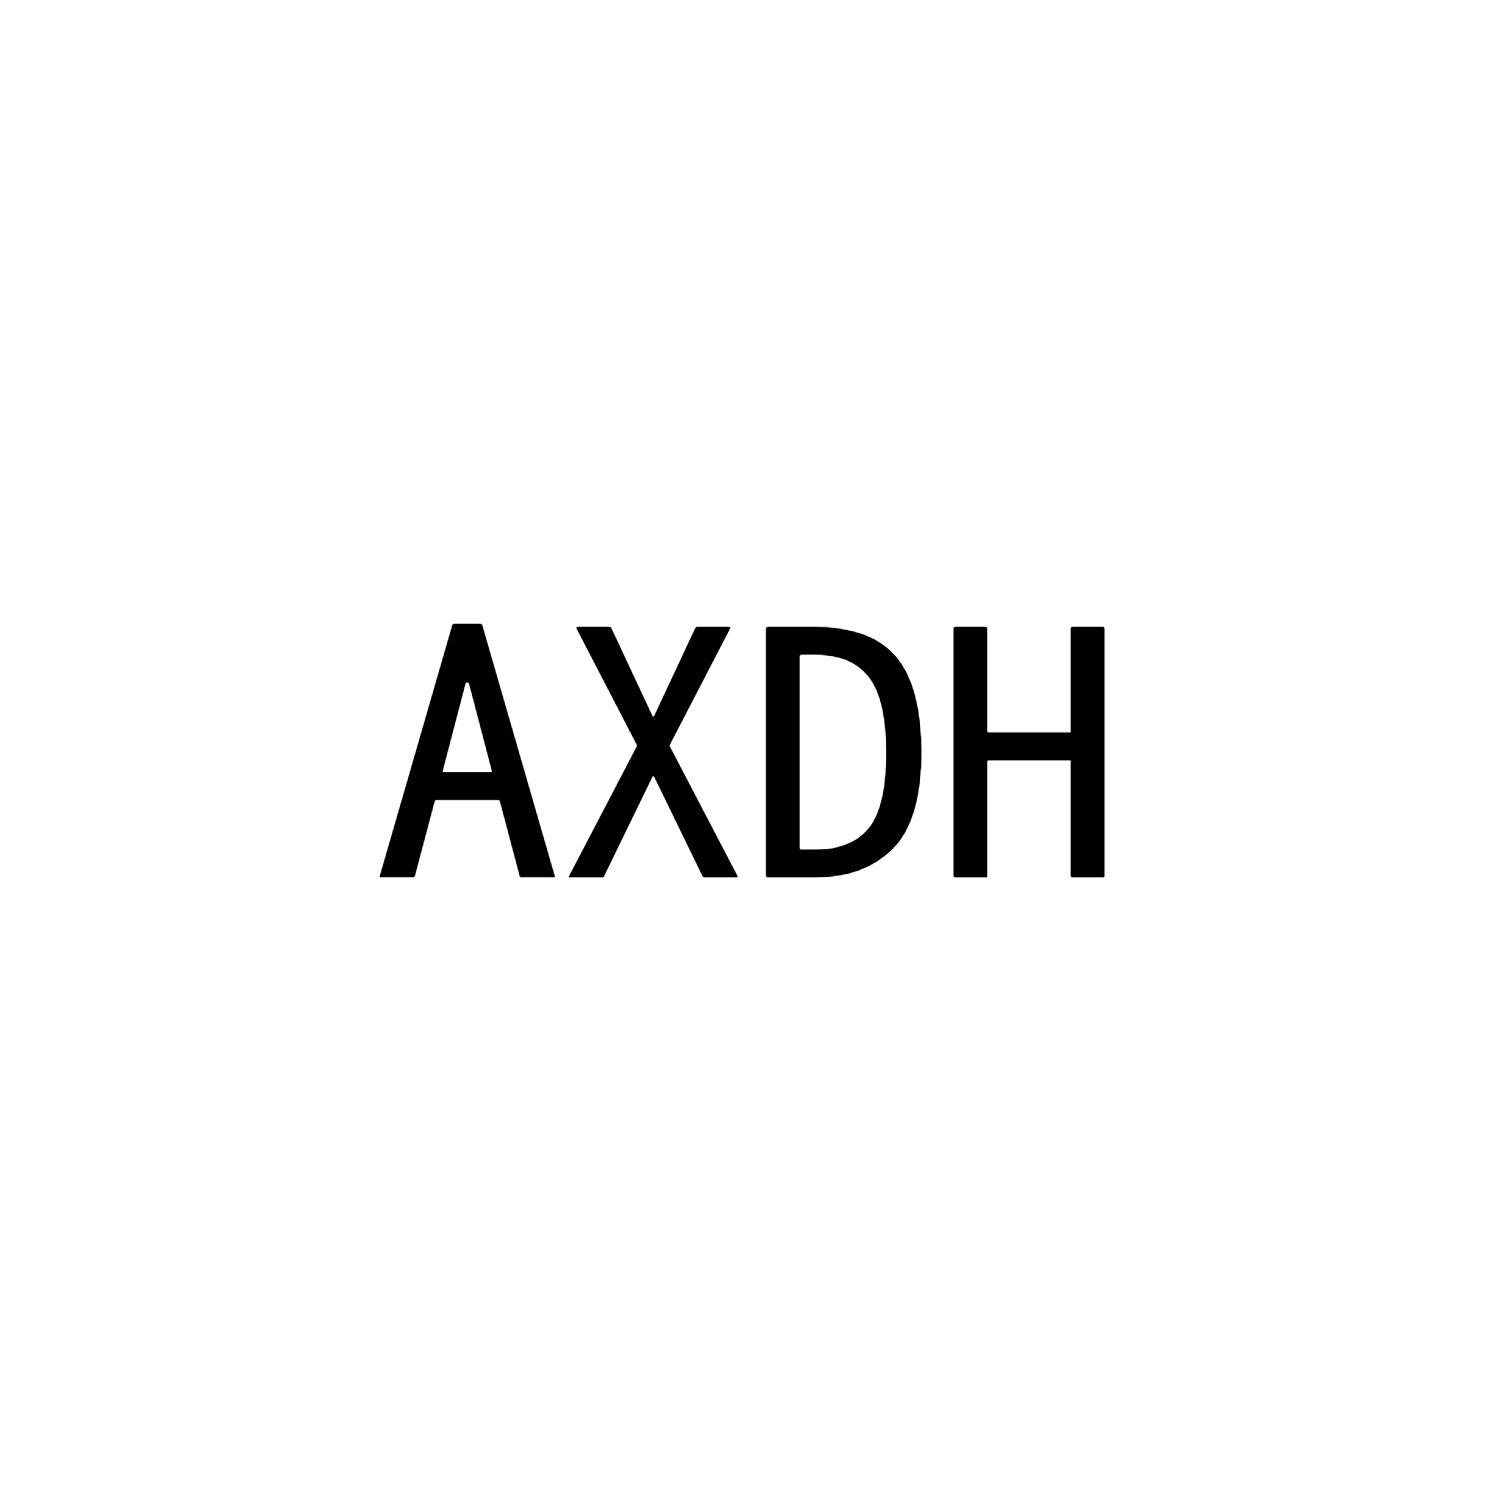 AXDH